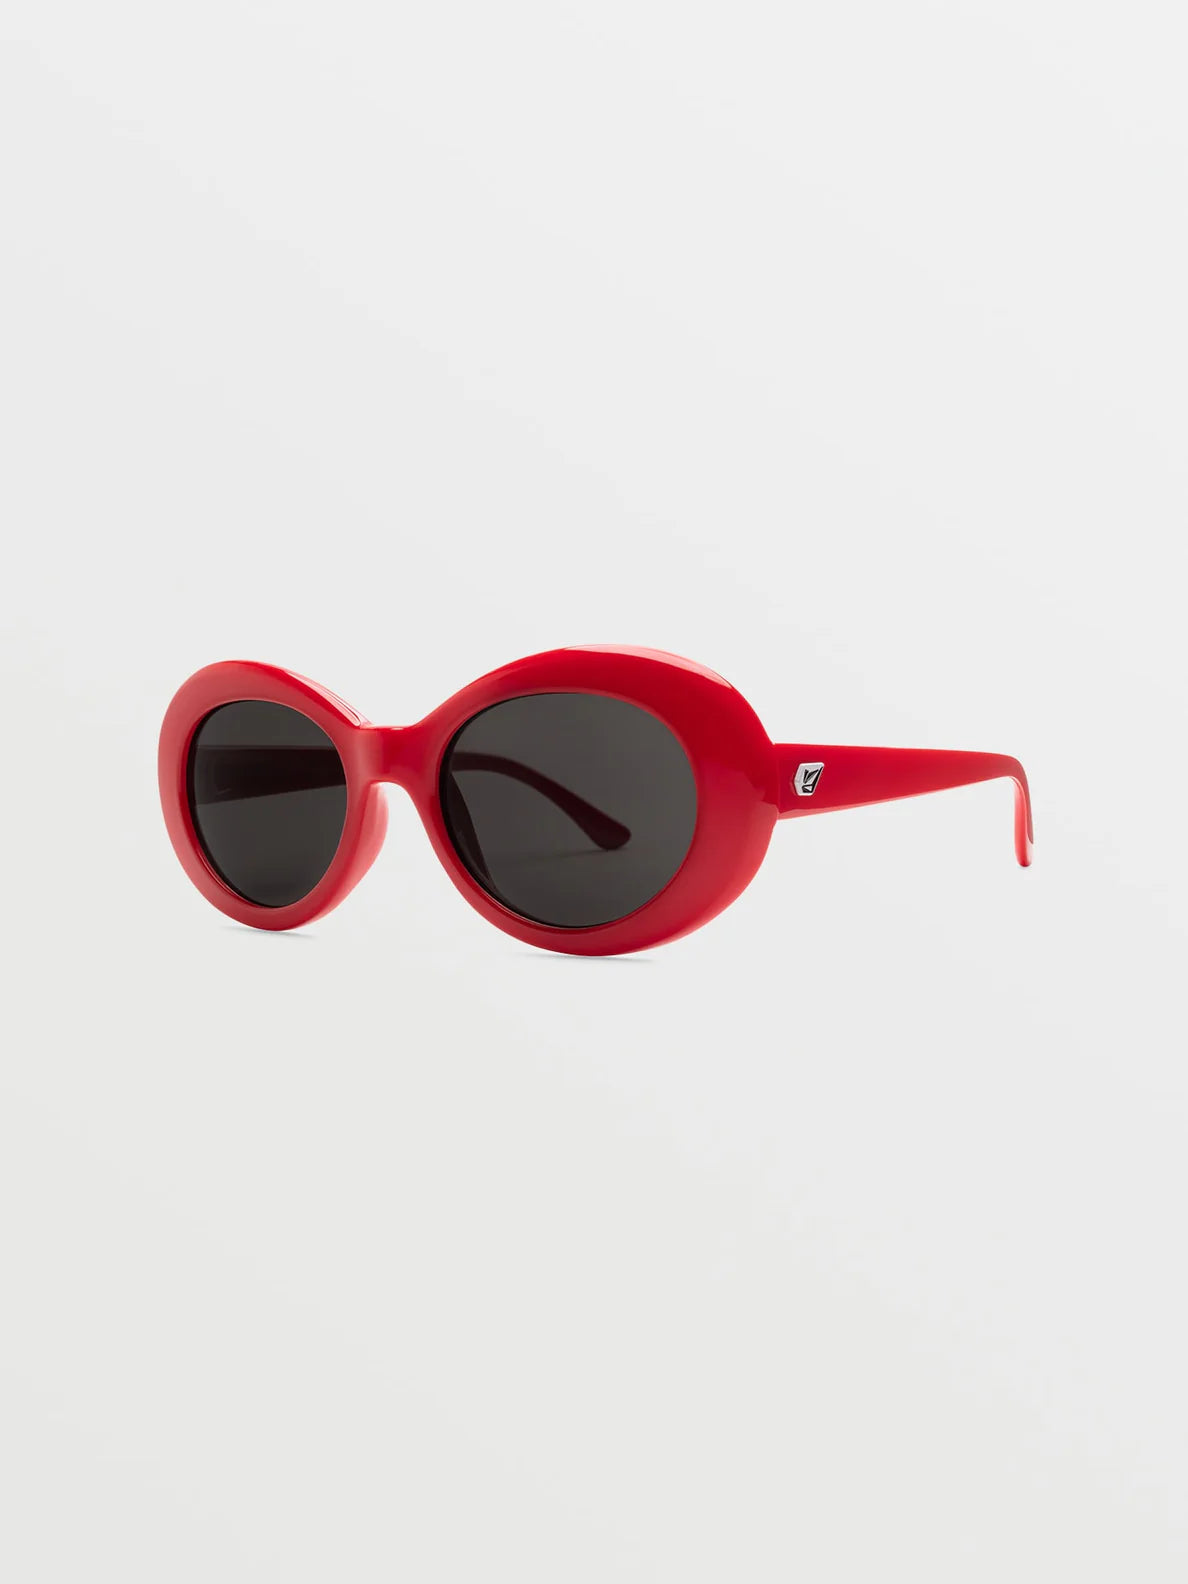 Volcom Stoned Gloss Red/Gray | Gafas de sol | Volcom Shop | surfdevils.com